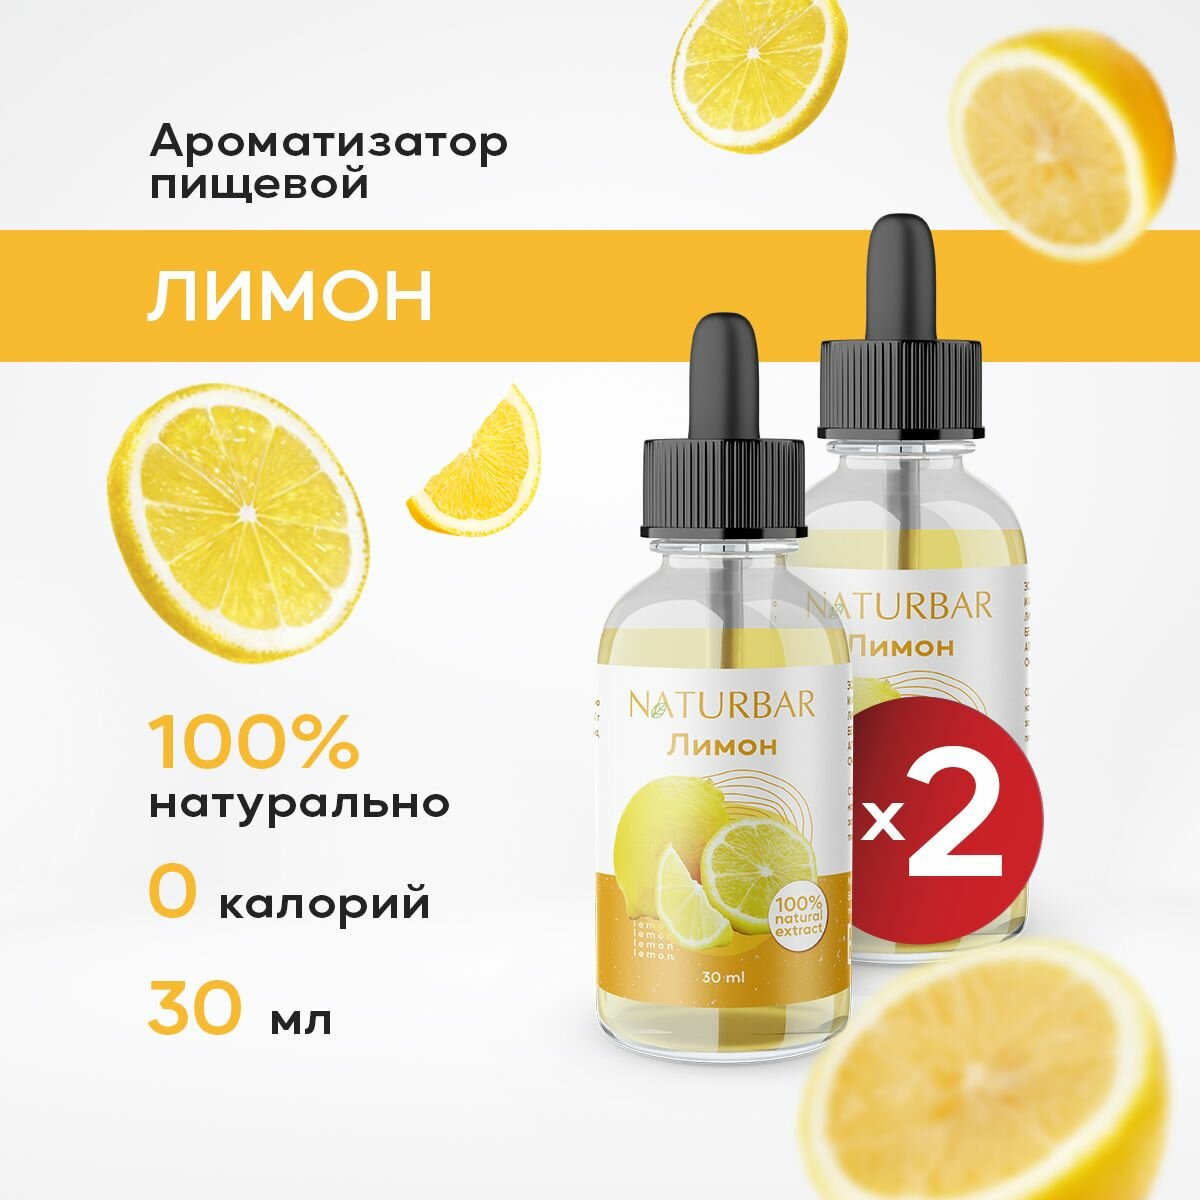 Ароматизатор пищевой натуральный лимон 30 мл (эссенция кондитерская) для выпечки, напитков - 2 шт.